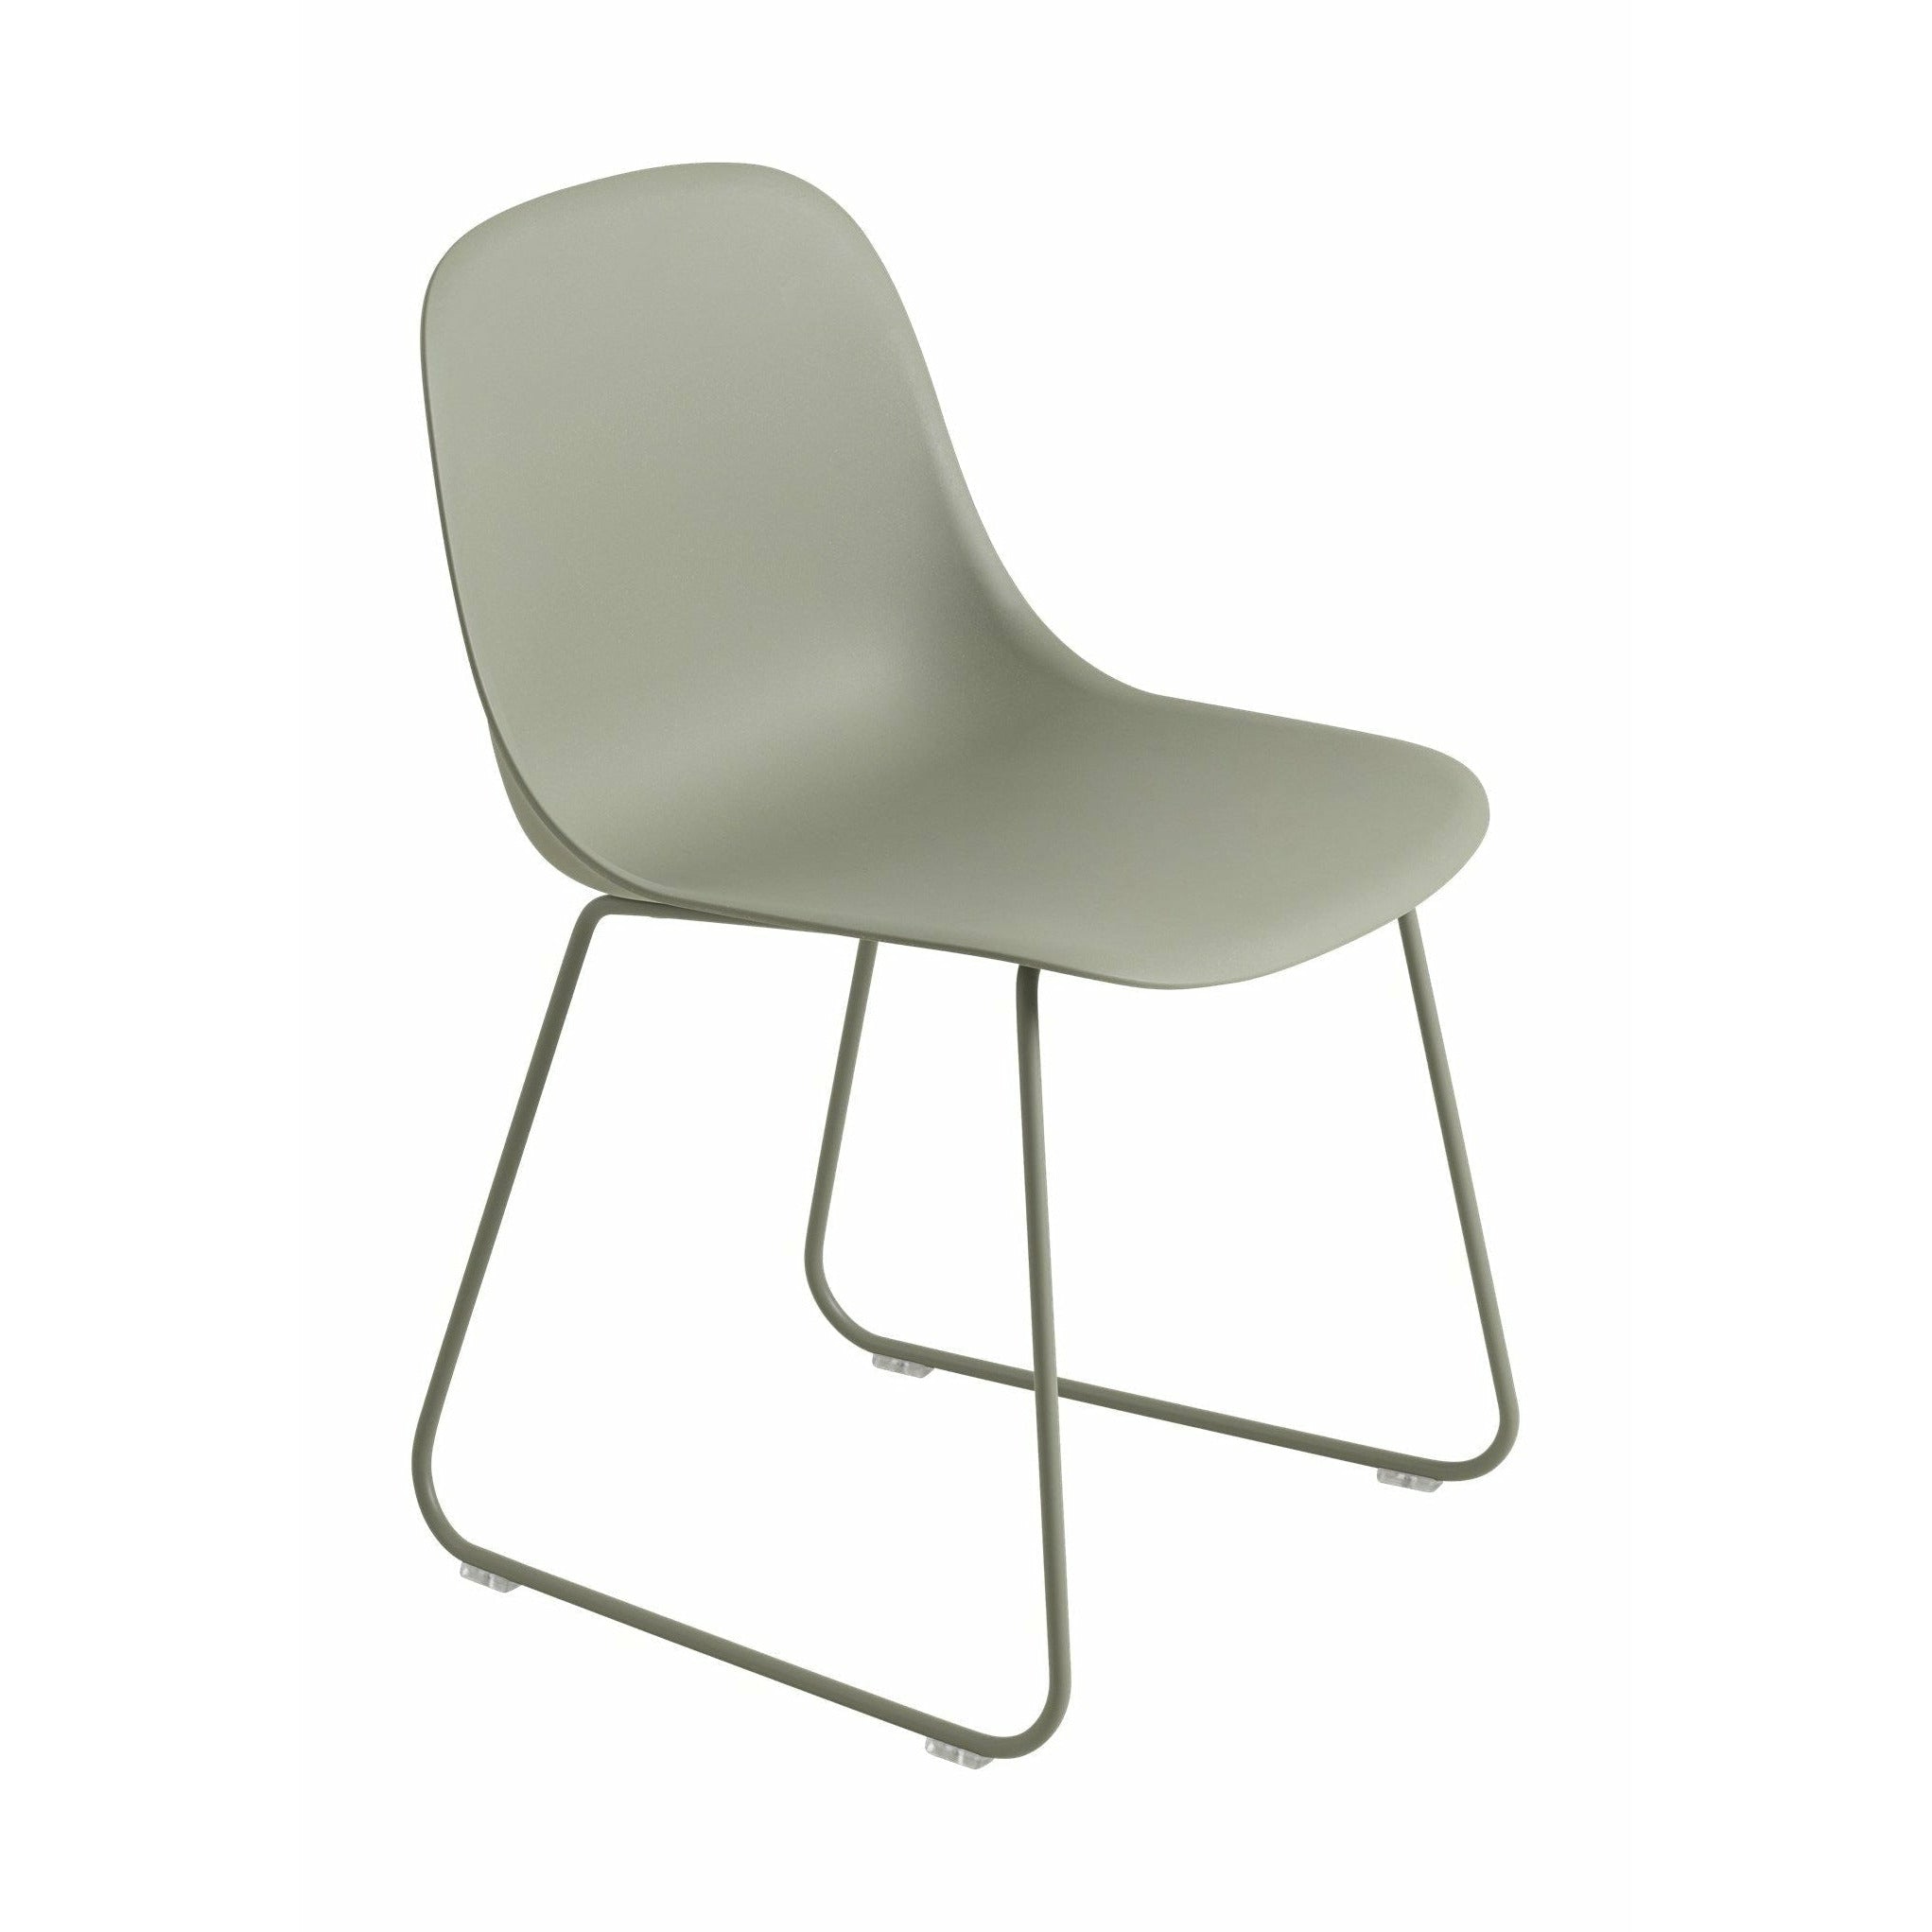 Muuto Fiber Side -stol gjord av återvunnen plastsläd, grön/grön